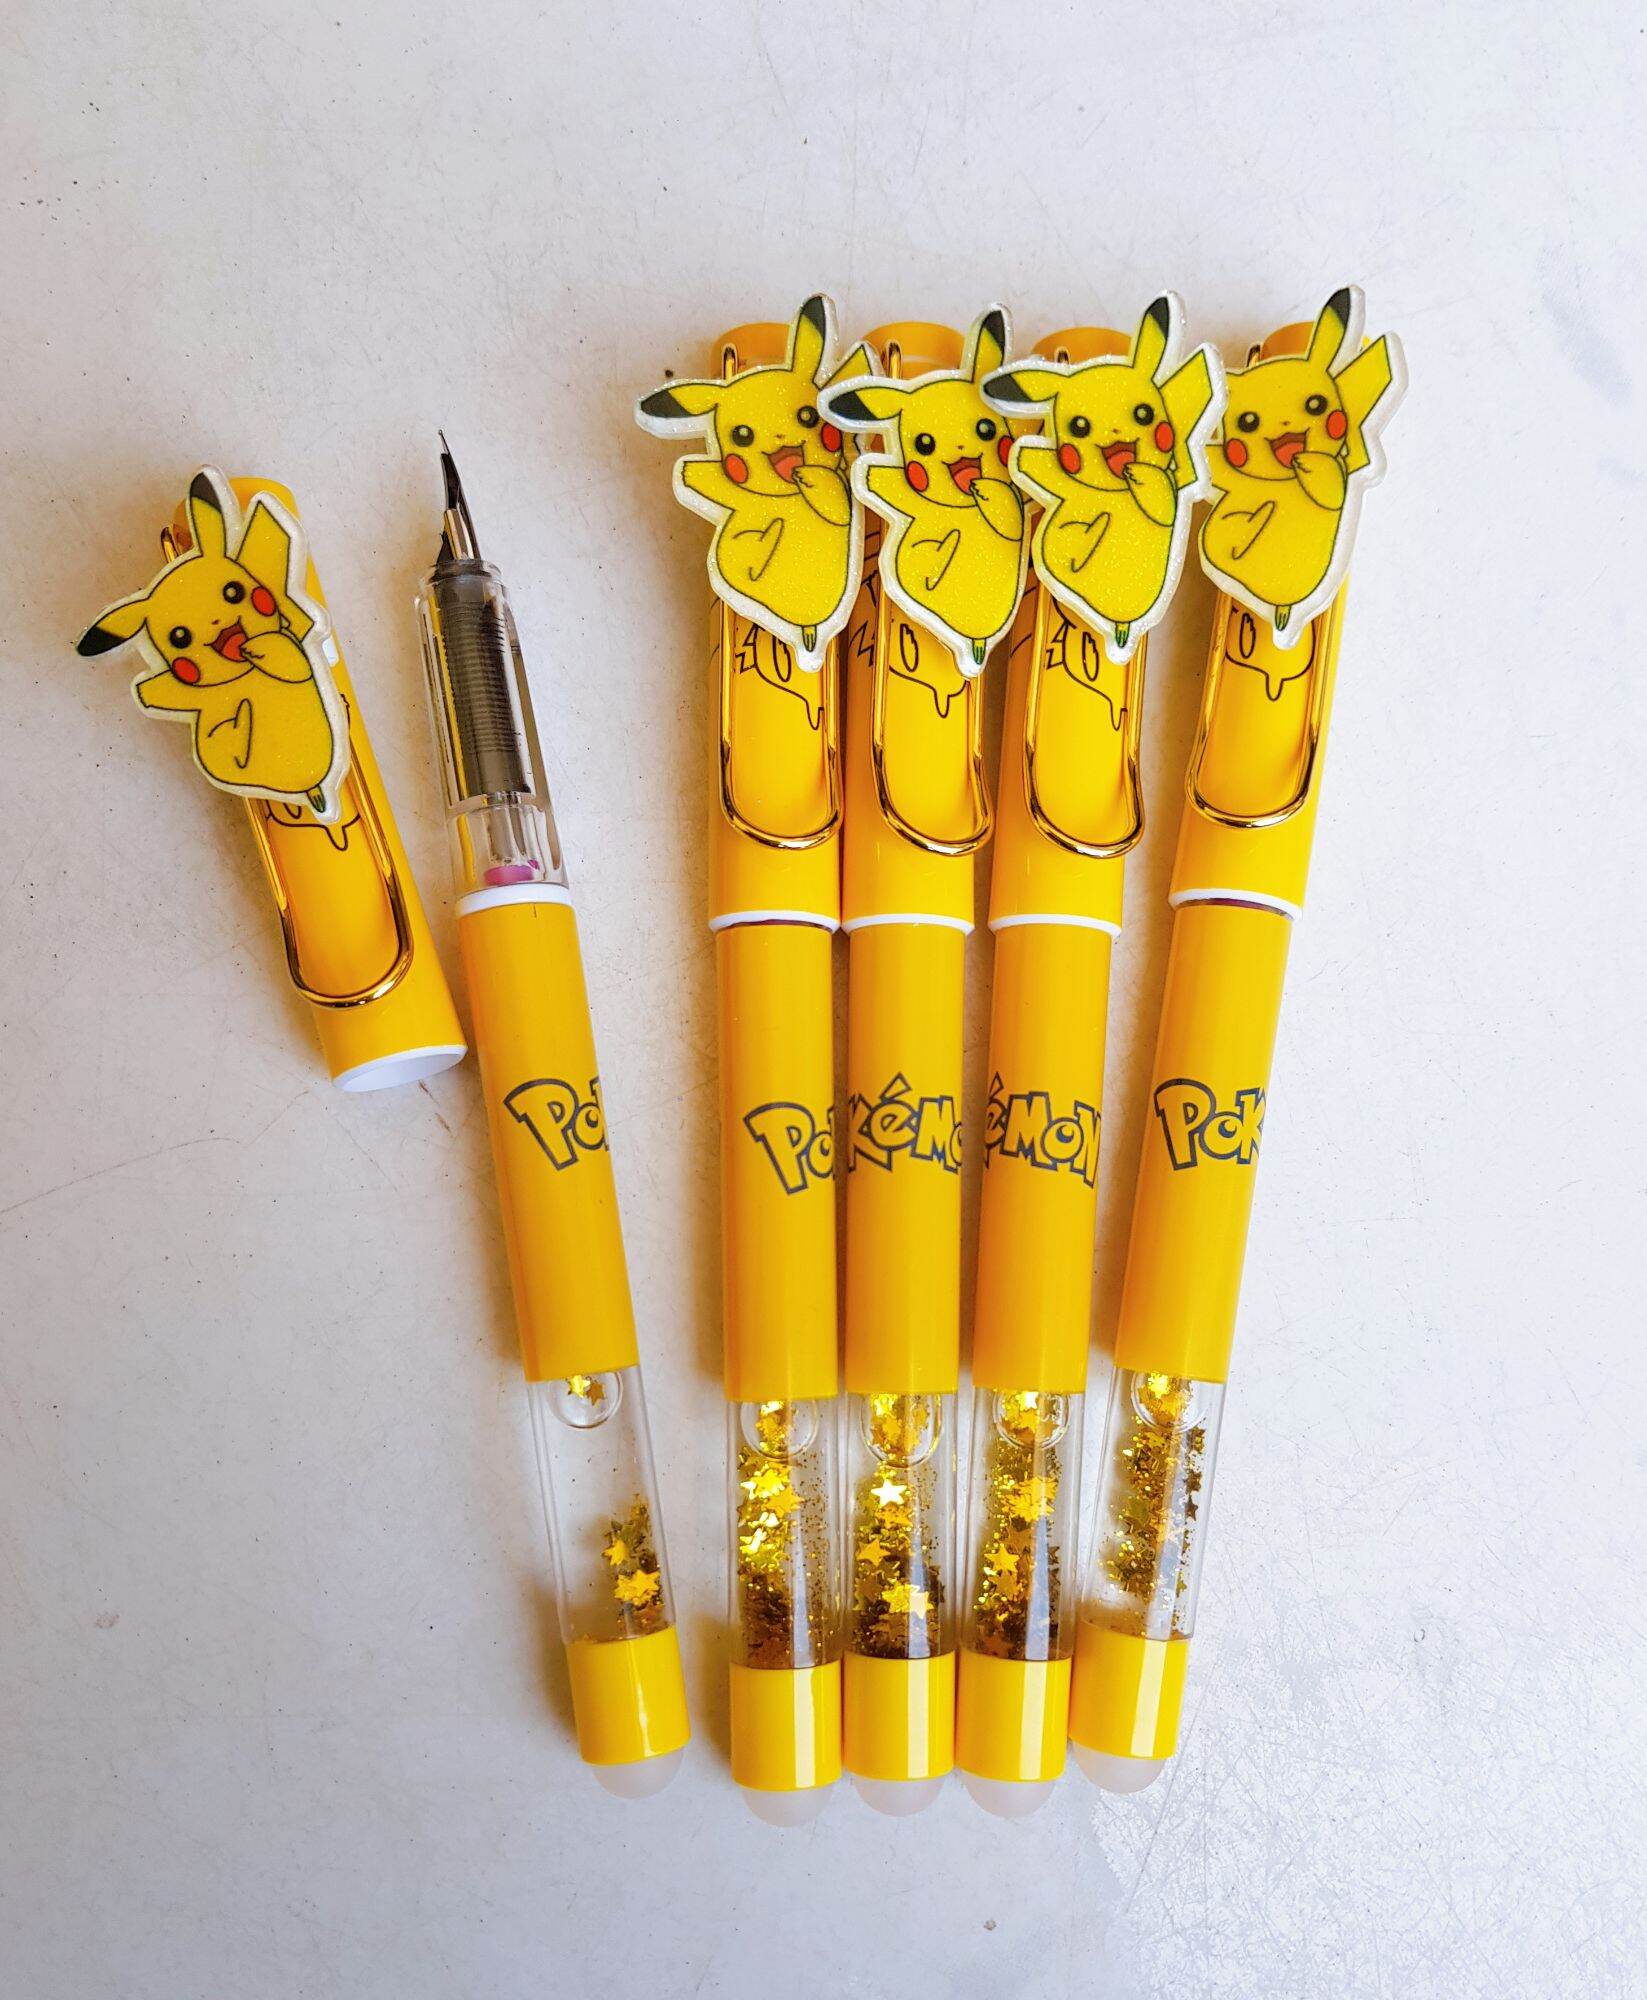 Bút máy xóa được pikachu và nhiều mẫu dễ thương, bút máy mực tím, có tặng ống mực